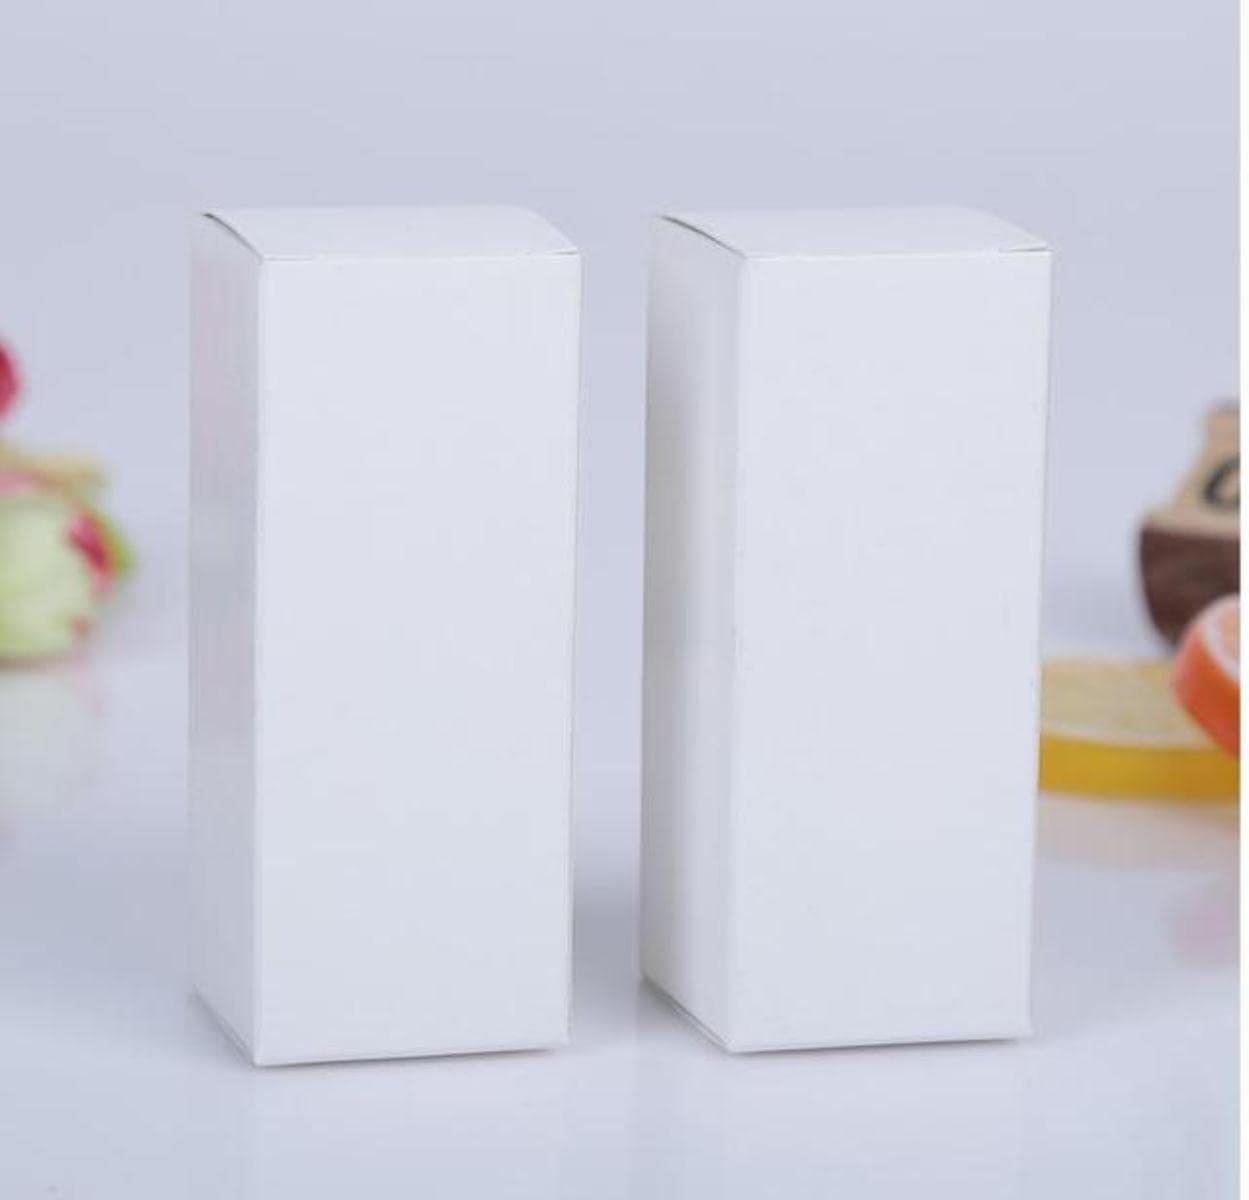 20 stücke Braun/Weiß/Schwarz Blanko Papier Box Für Kosmetik Verpackung Box Ventile Tubes Handwerk Kerze Geschenkverpackung Boxen-Weiß,9x9x9cm